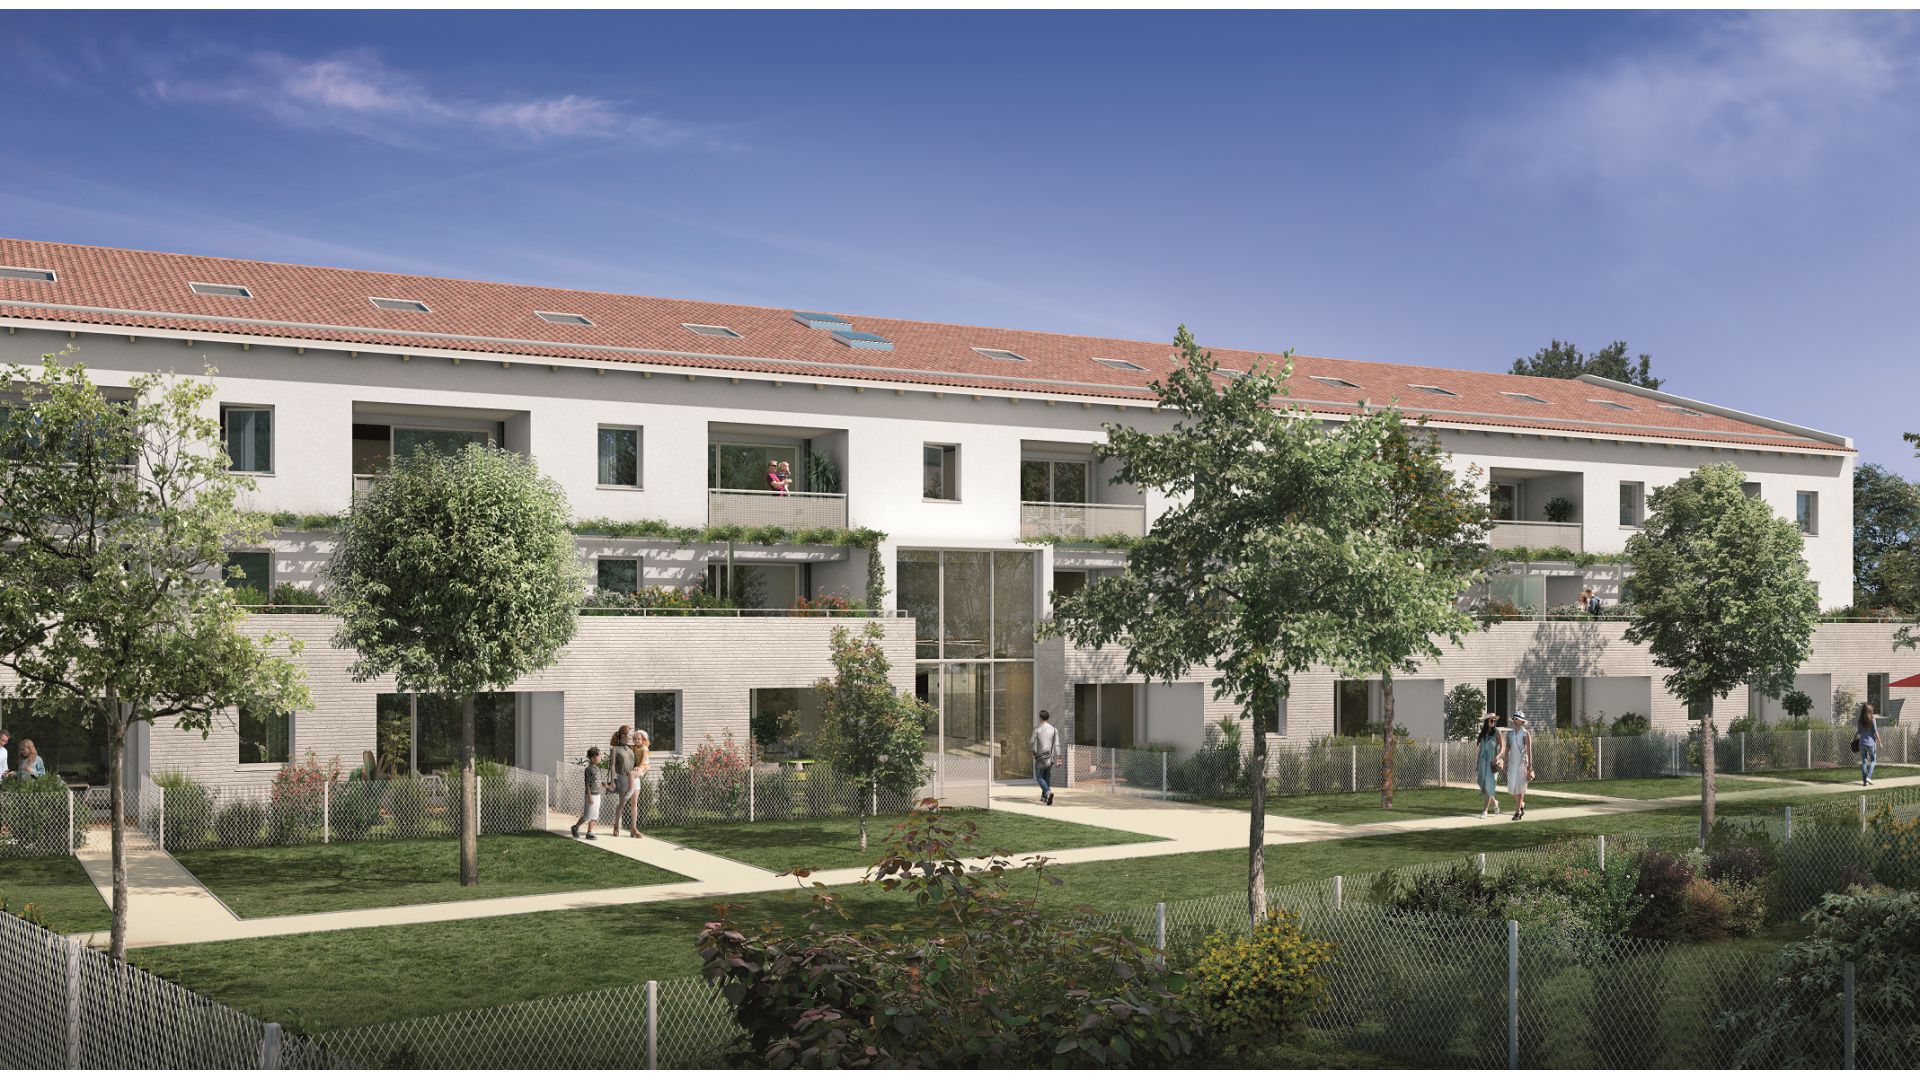 GreenCity immobilier - Saint-Jory - 31790 - Résidence Domaine D'Ophélia - appartements neufs du T2 au T4 et villas T3 et T5